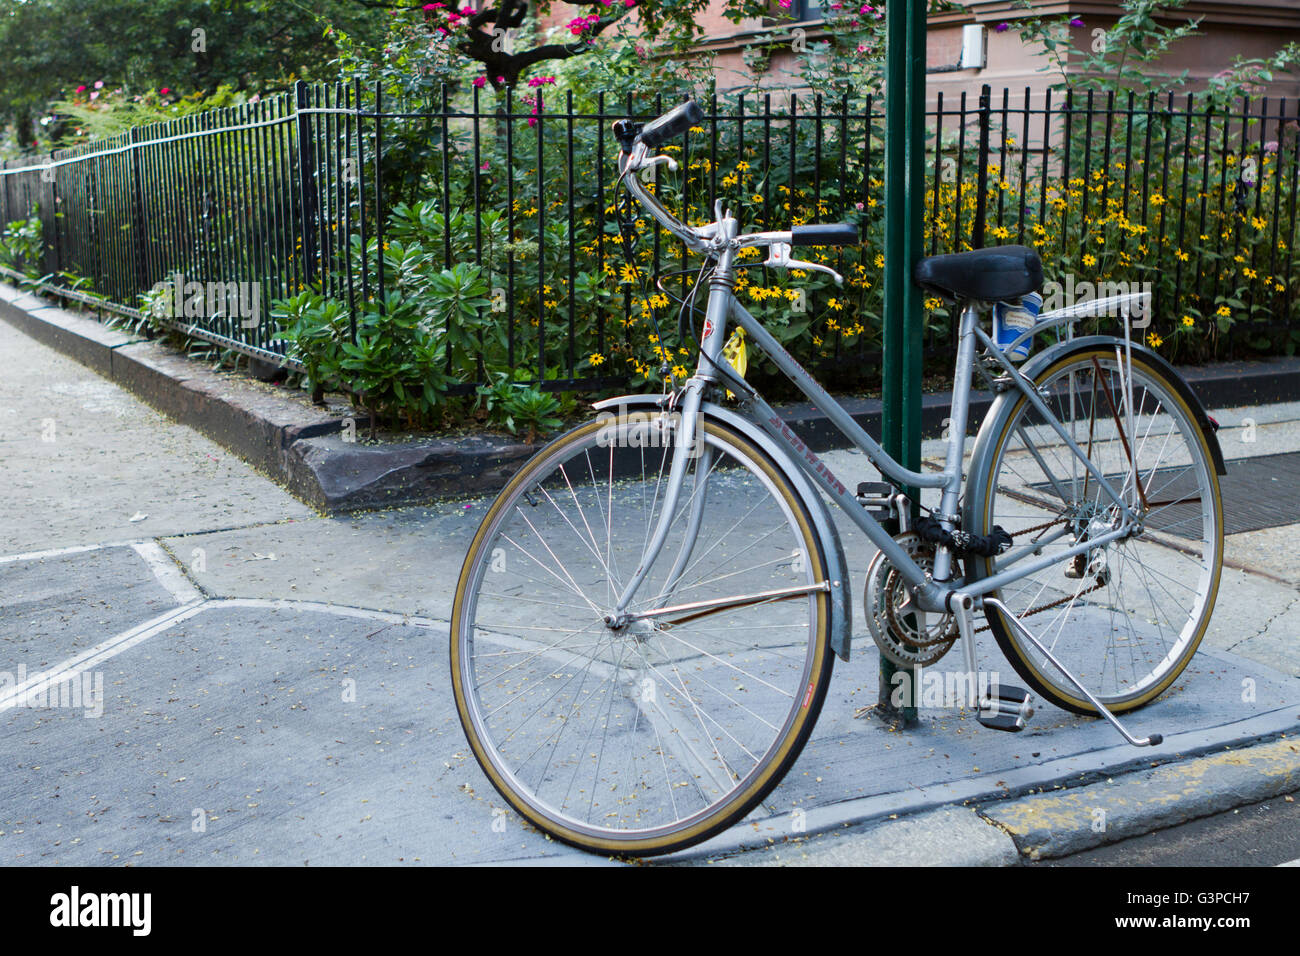 Stützte sich auf ein Schild mit der Kaffeetasse übrig von pendeln in einer städtischen Umgebung Fahrrad Gehwege und Gärten Stockfoto